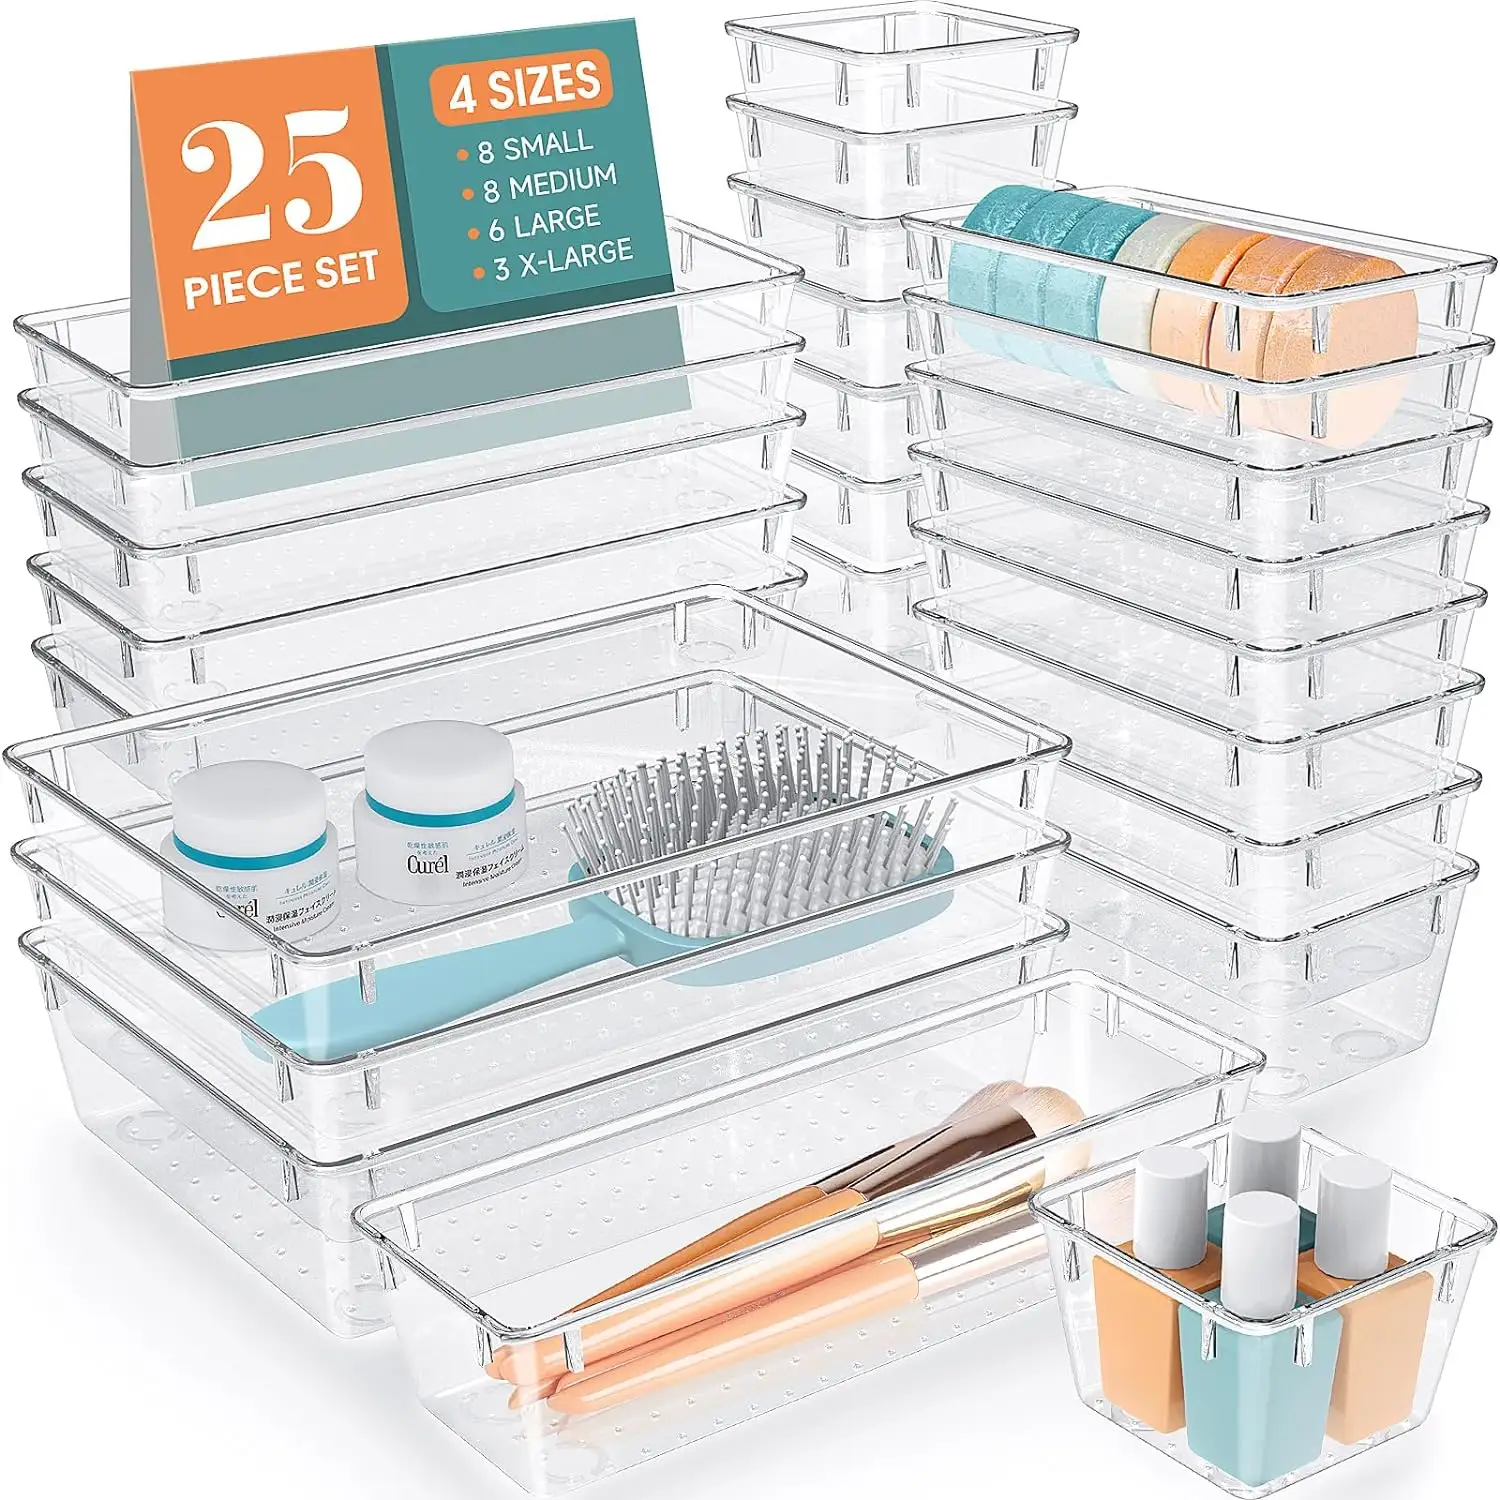 Ufficio 25 pezzi Set Organizer in plastica trasparente 4 dimensioni multifunzione per cassetti e gadget contenitori